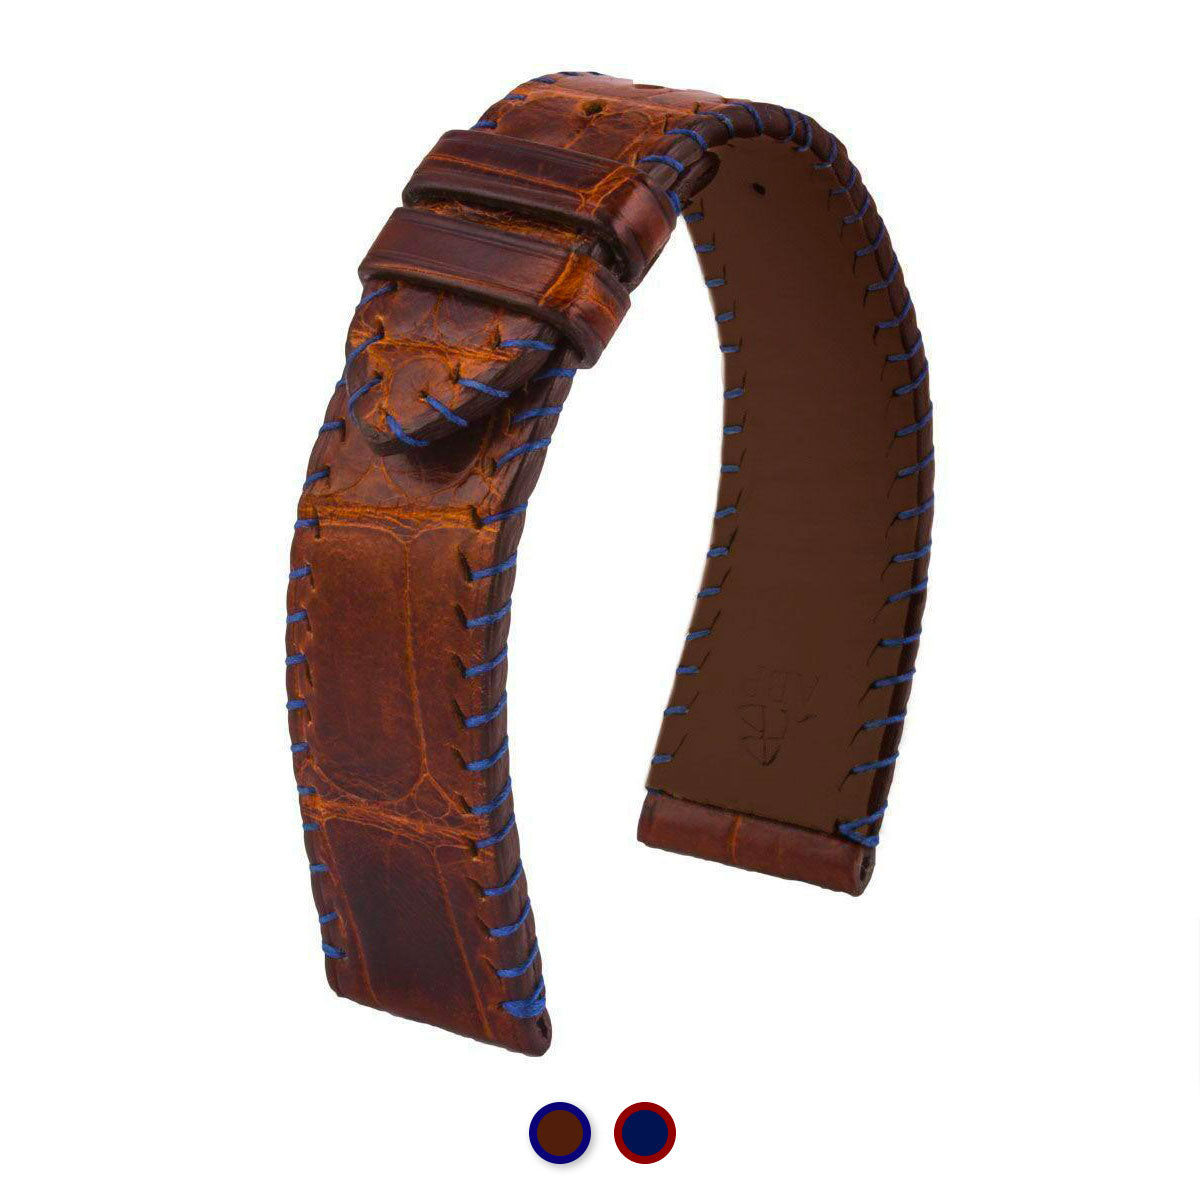 Bracelet montre cuir - Yachting couture semi tribale - Alligator (marron / bleu, bleu / marron) - watch band leather strap - ABP Concept -